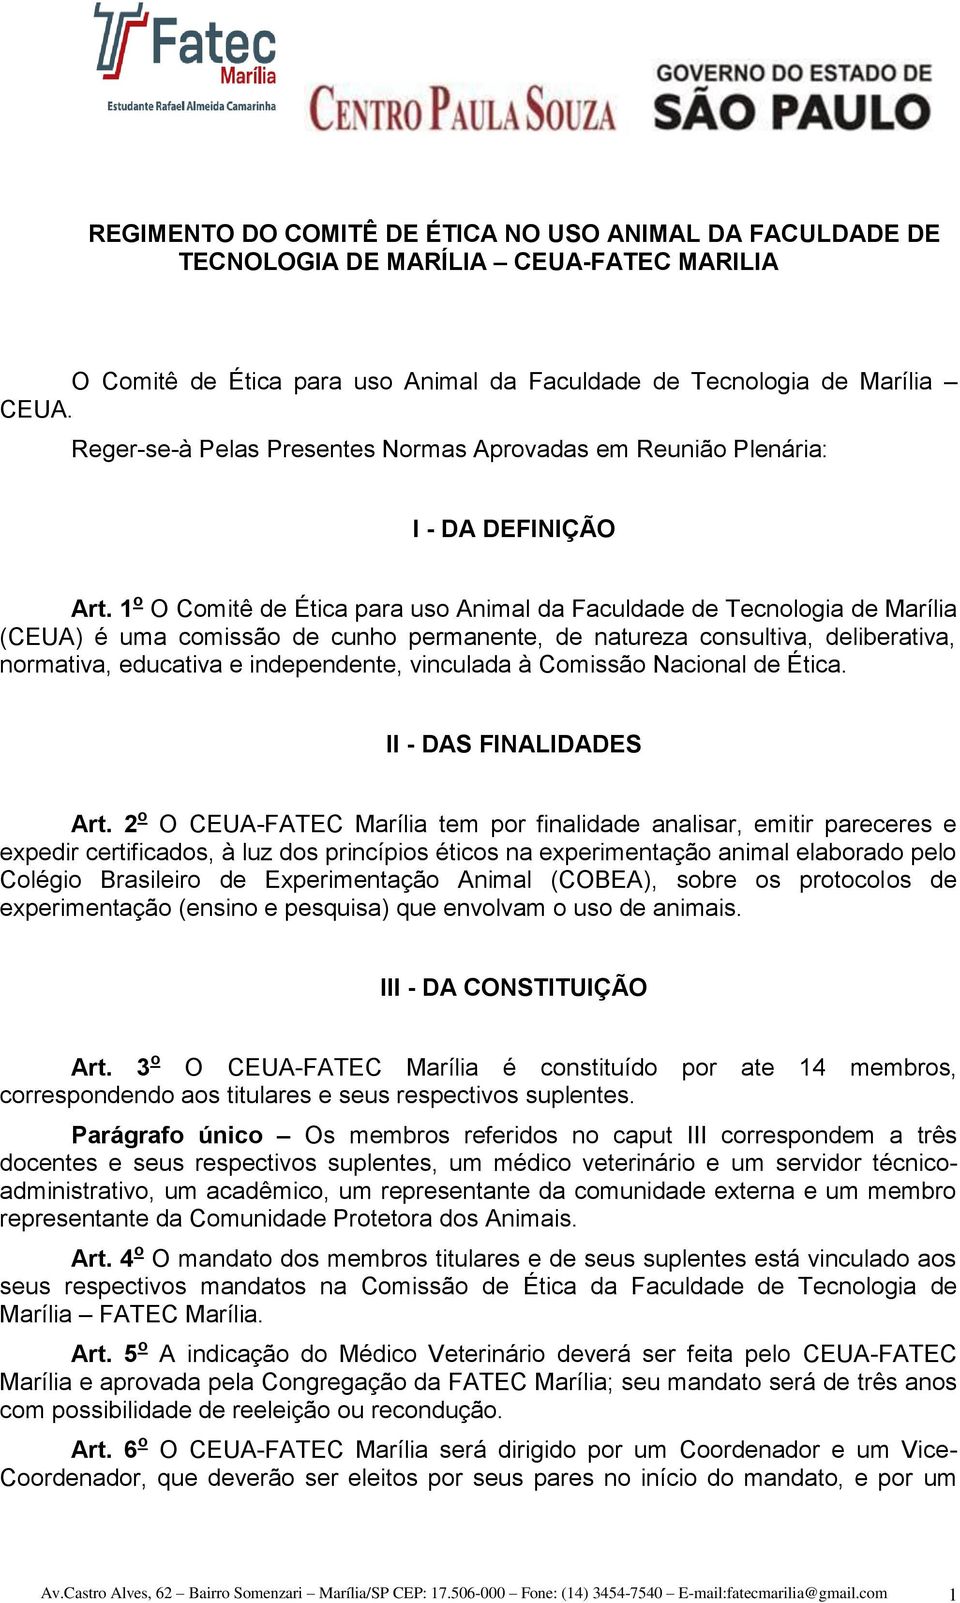 1 o O Comitê de Ética para uso Animal da Faculdade de Tecnologia de Marília (CEUA) é uma comissão de cunho permanente, de natureza consultiva, deliberativa, normativa, educativa e independente,